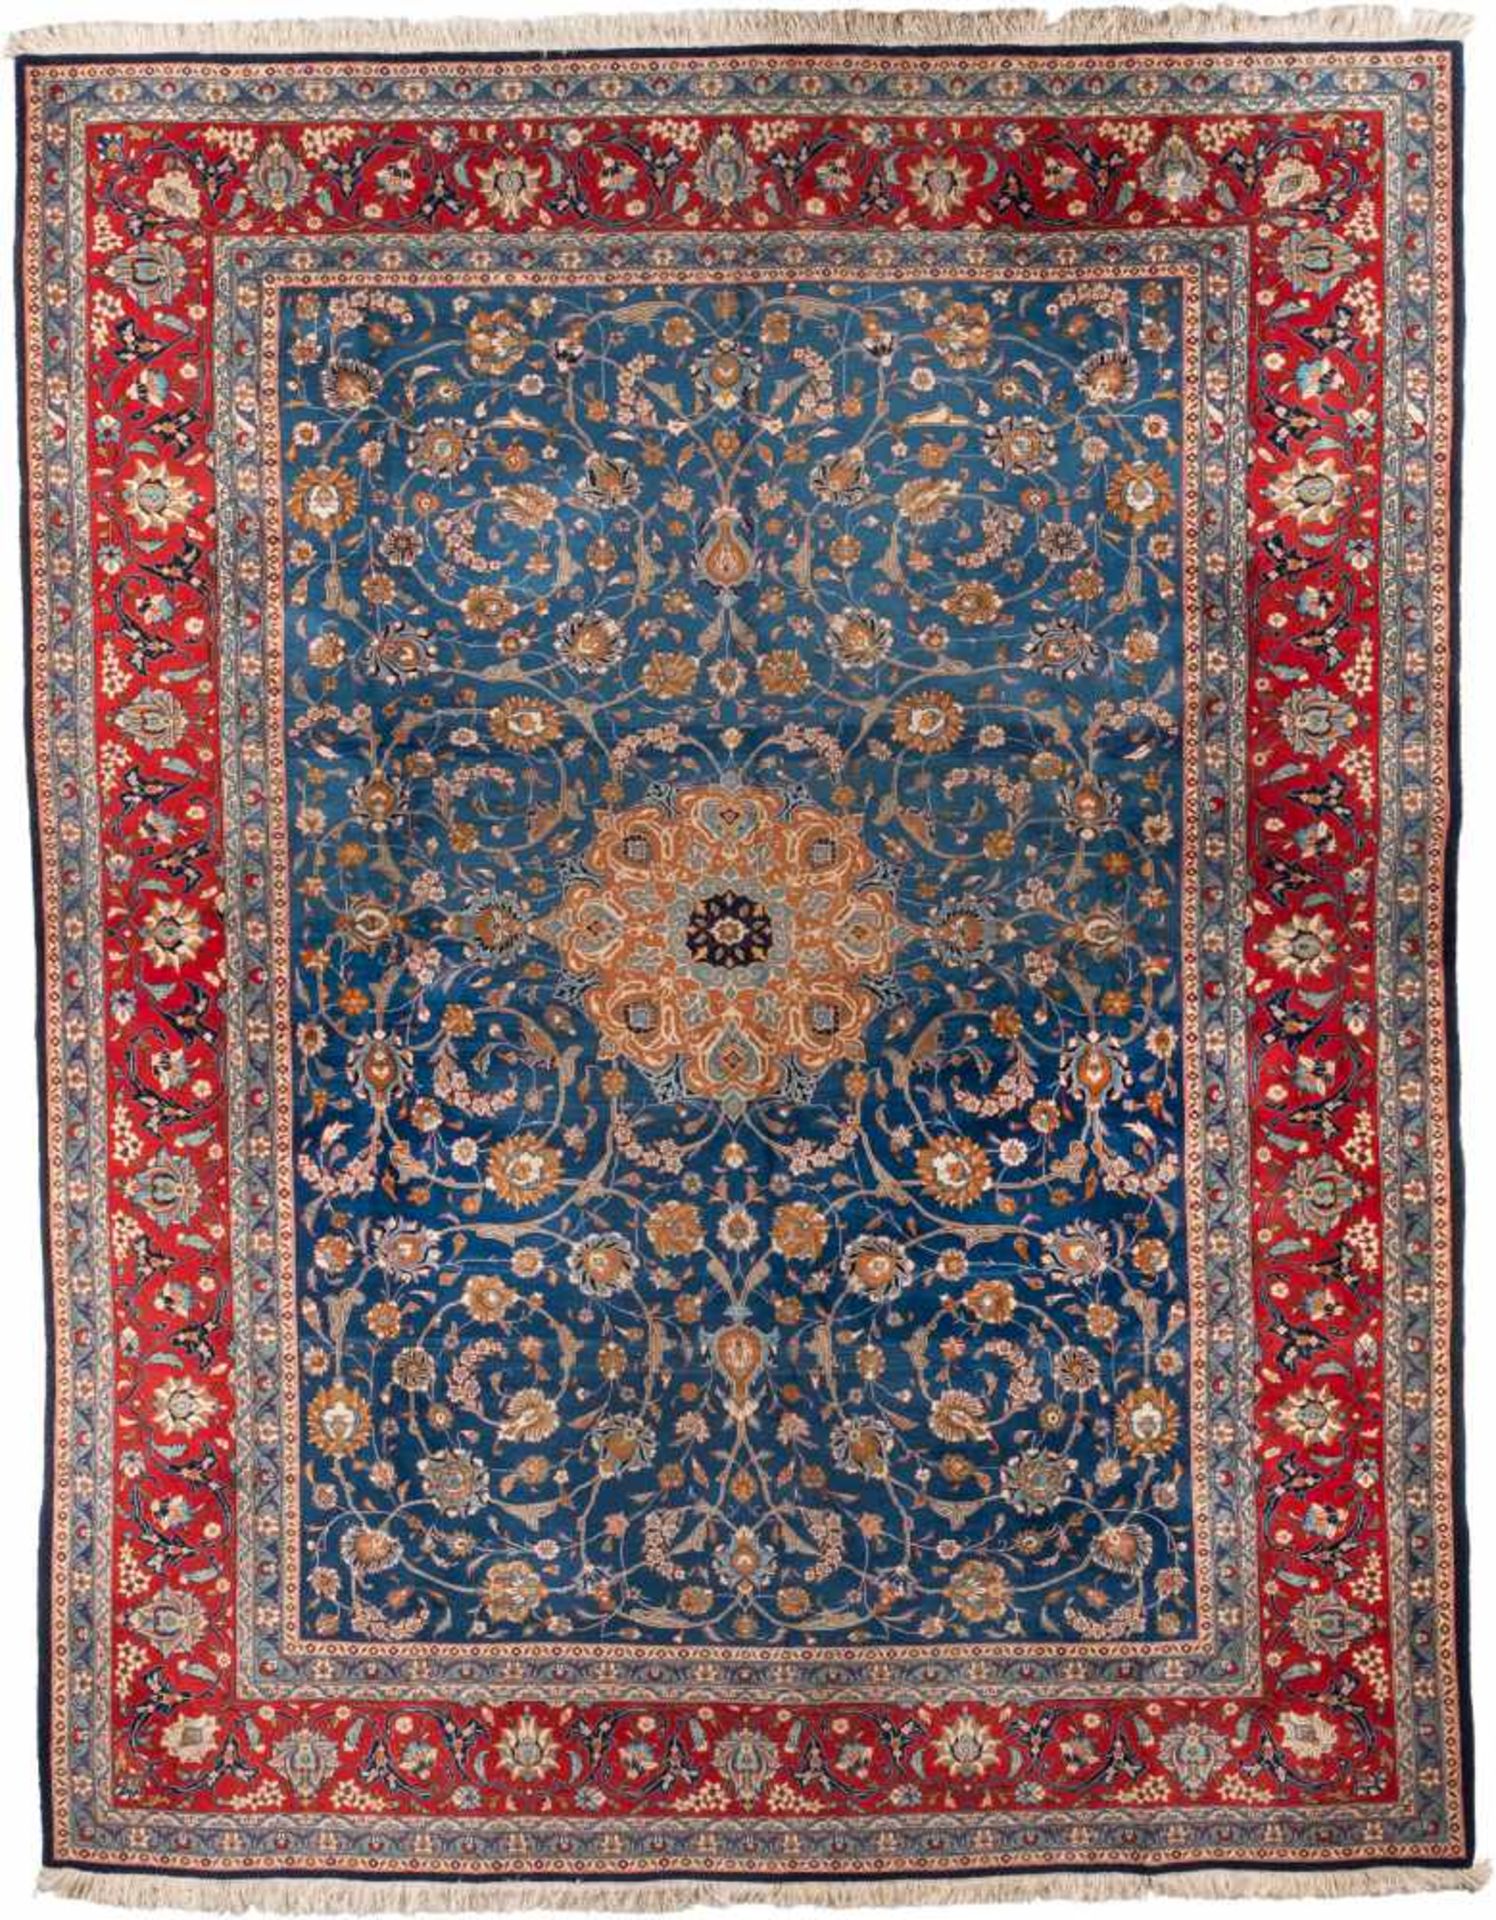 TEHERAN Persien, 2. Hälfte 20. Jh.379 x 298 cm. Min. Gebrauchsspuren.